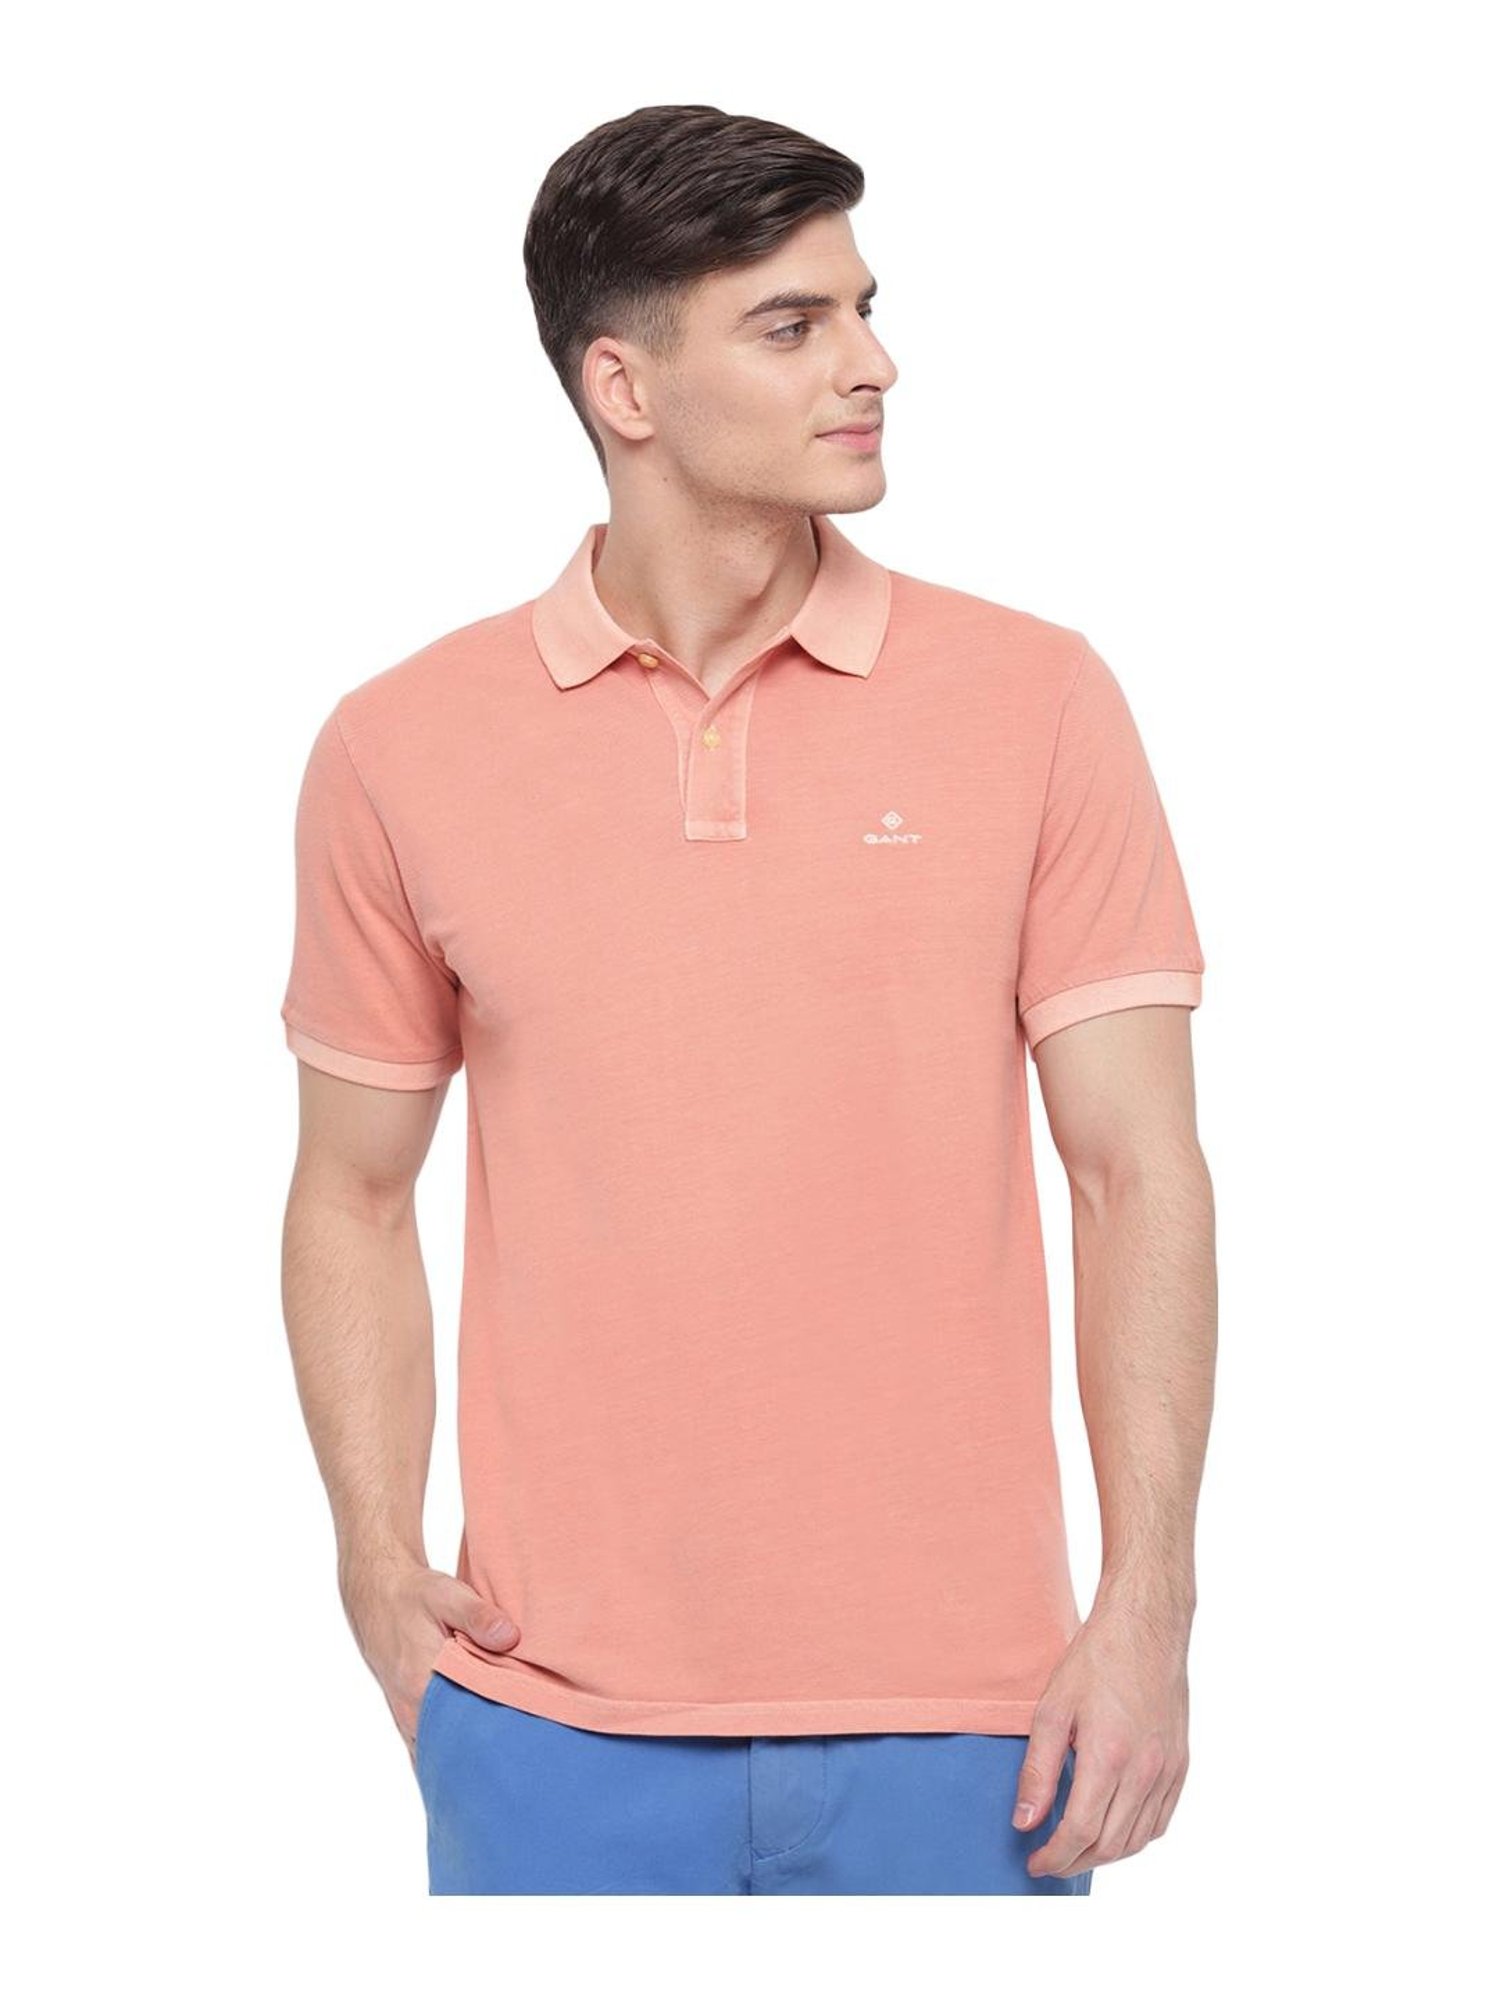 Buy GANT Orange Cotton Polo T-Shirt for Men @ Tata CLiQ